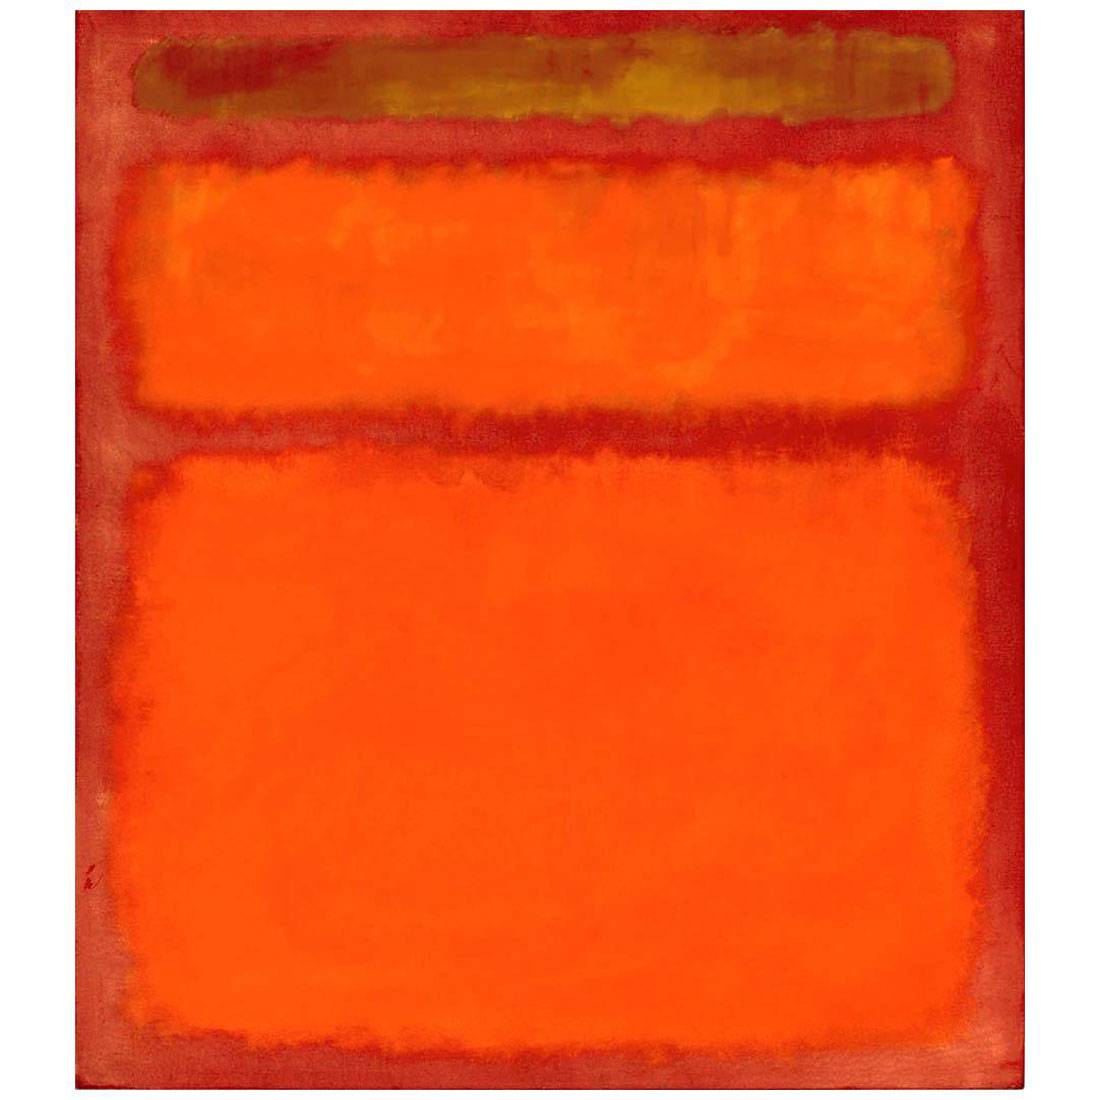 Mark Rothko. Orange, Red, Yellow. 1961